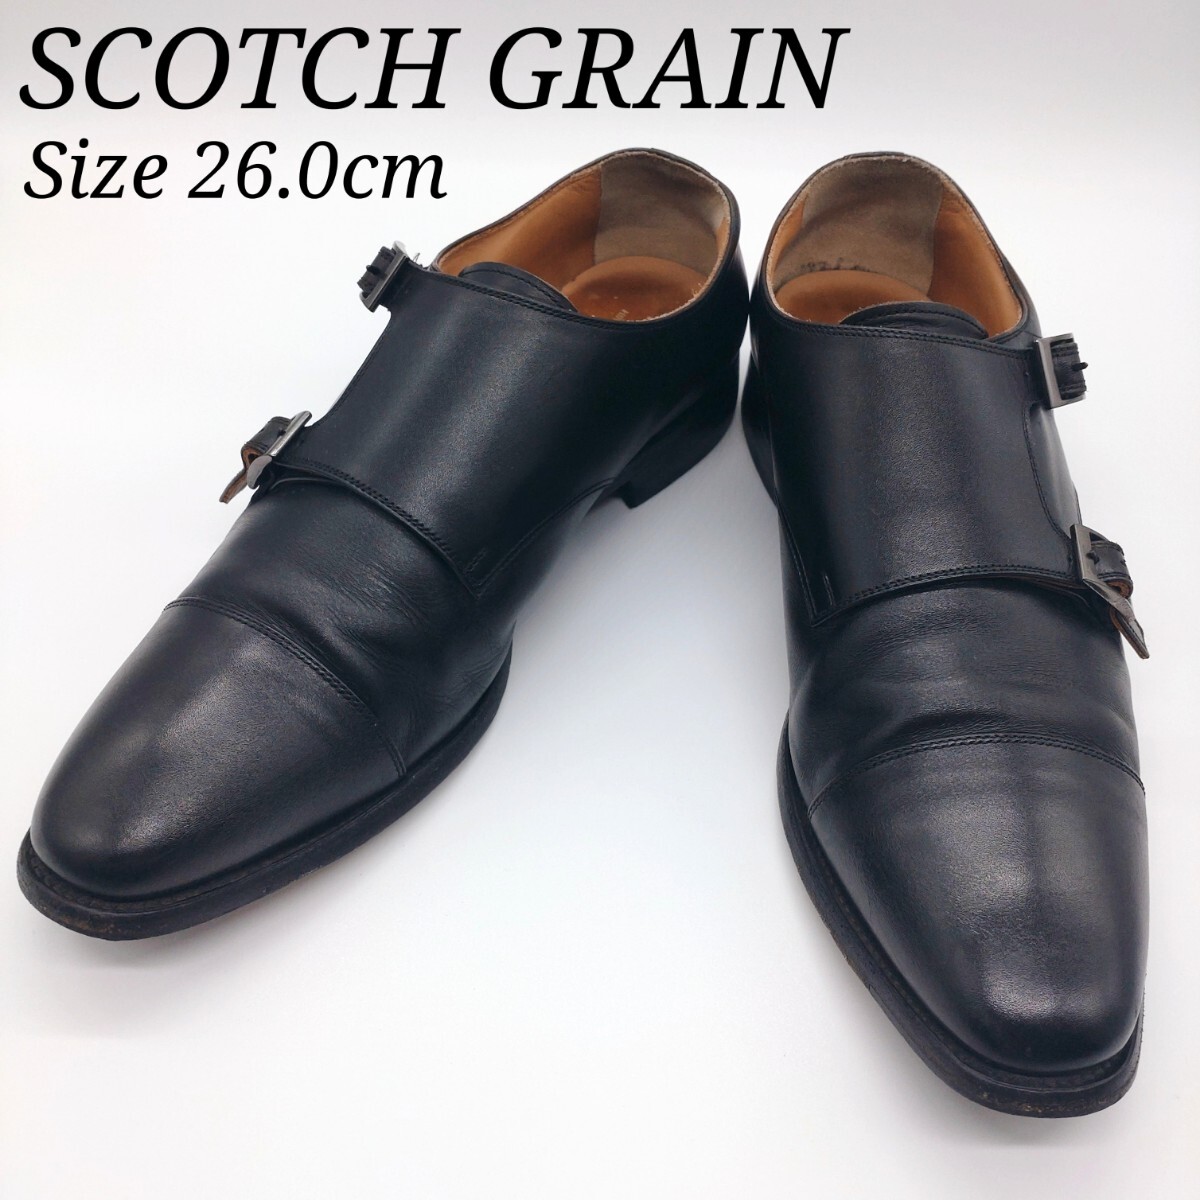 スコッチグレイン SCOTCH GRAIN ビジネスシューズ 26.0cm ダブルモンク ストレートチップ 日本製 T0297 HIROKAWA 革靴レザー ブラック 黒色